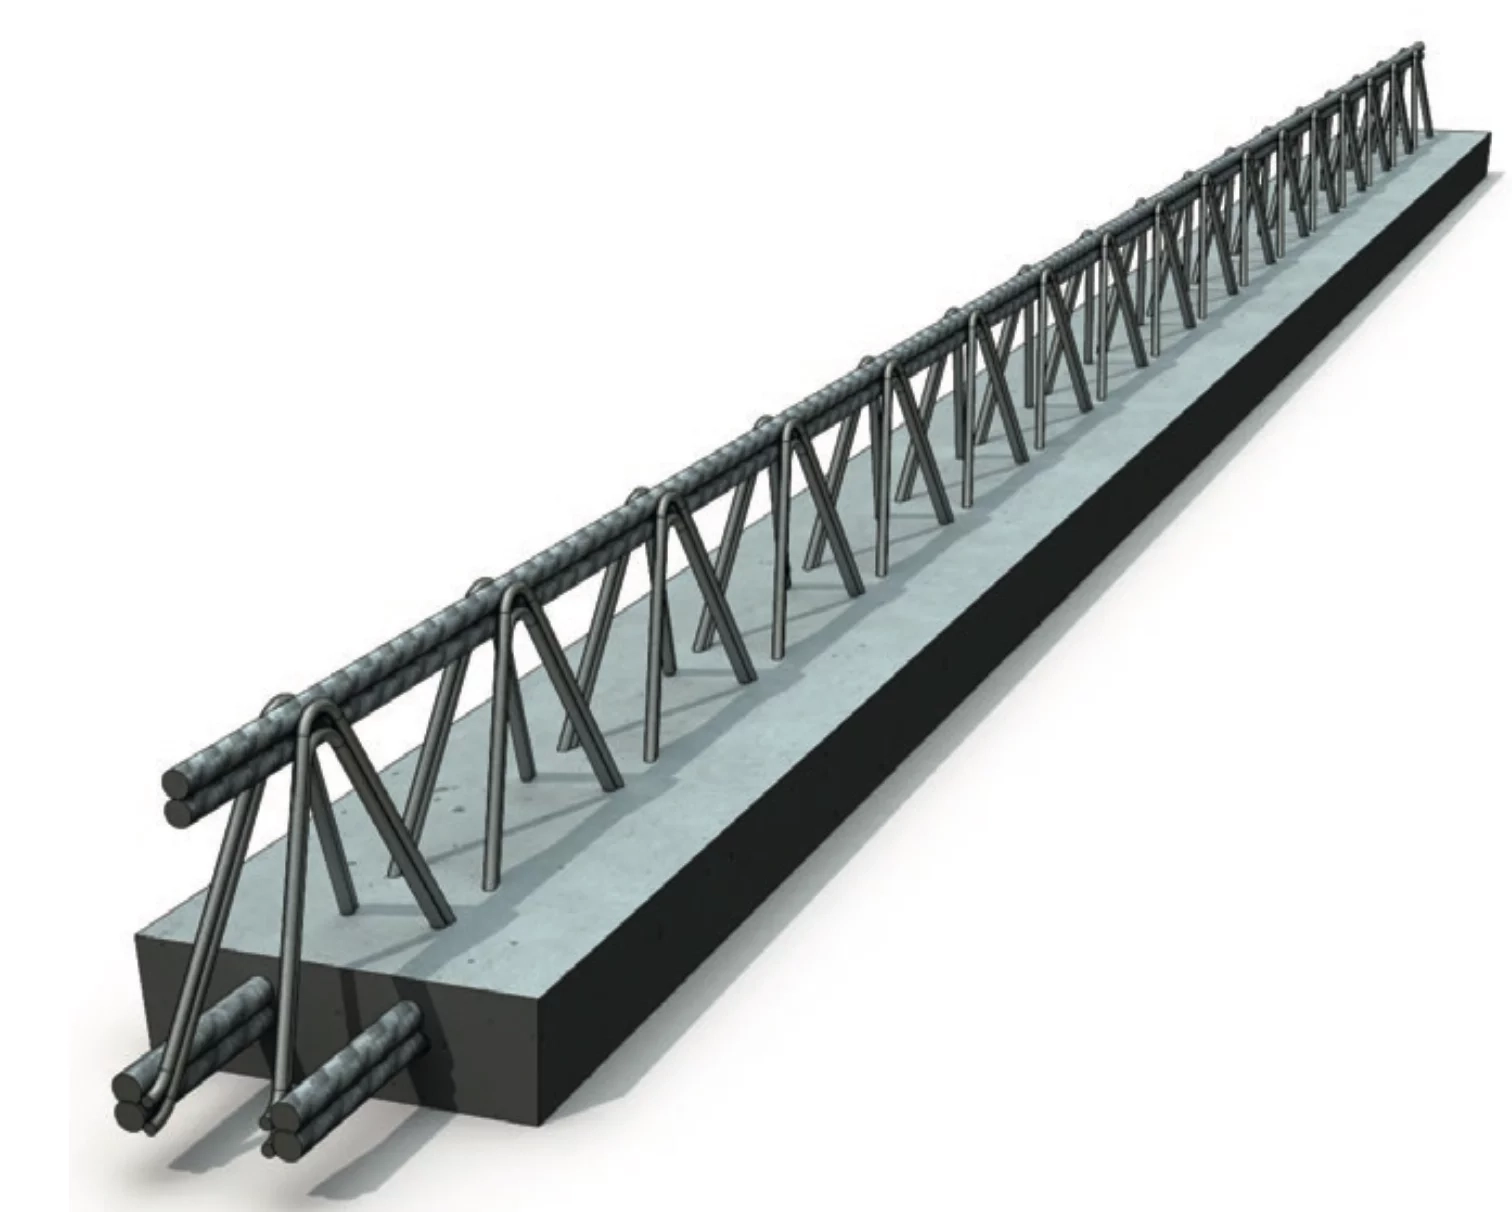 poutre-beton-manupoutr-0-20-x-2-5m-mpe20250-fimurex-plancher-0